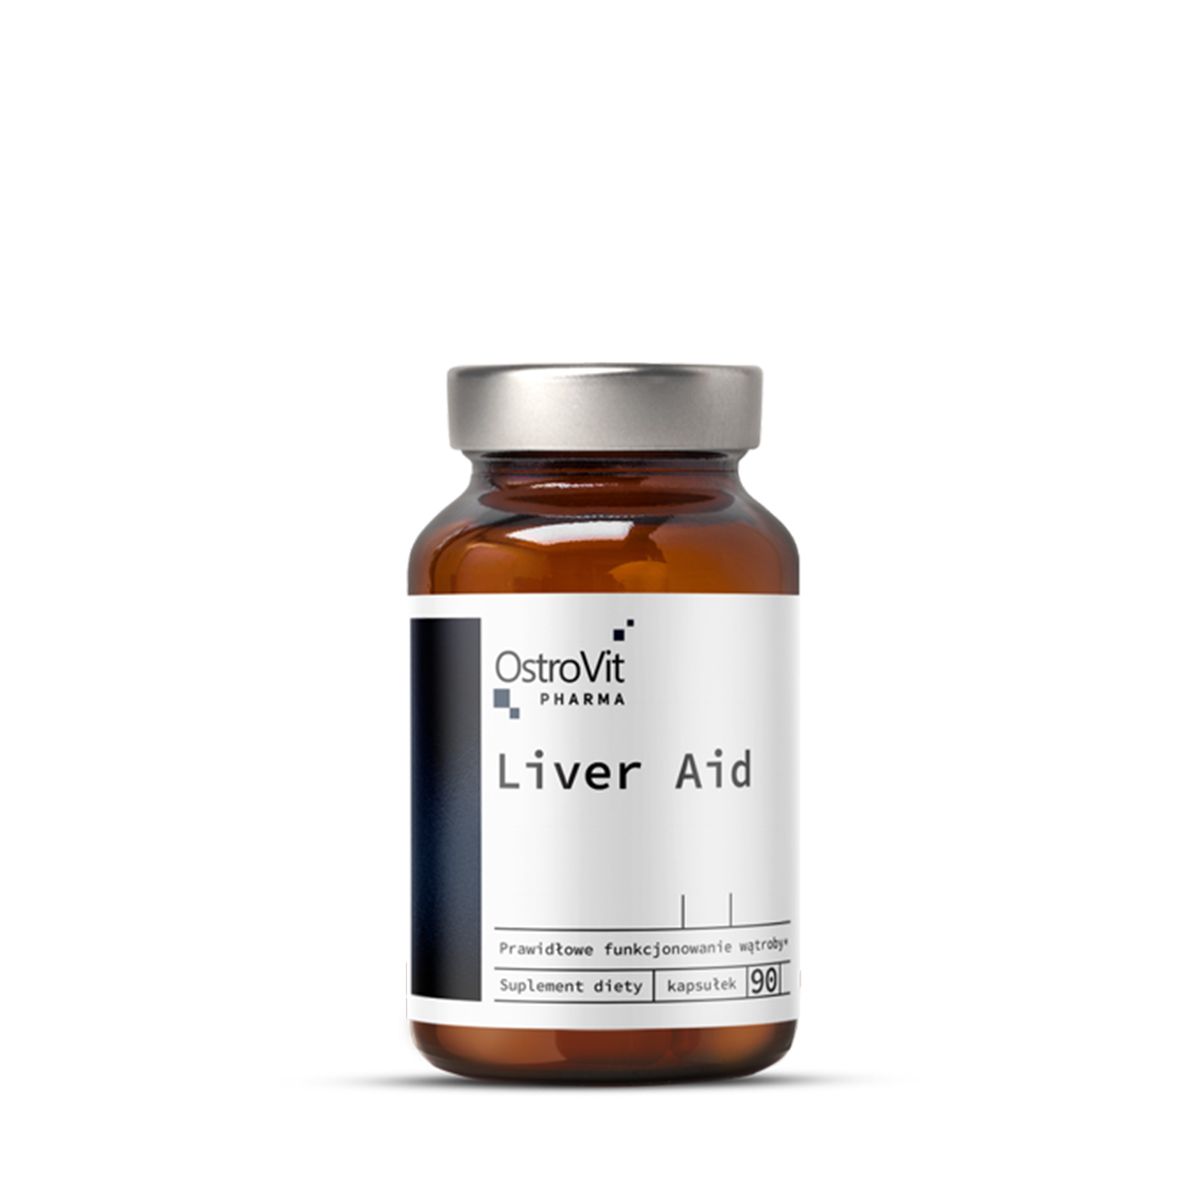 Májvédő kapszula, OstroVit Pharma Liver Aid caps, 90 kapszula